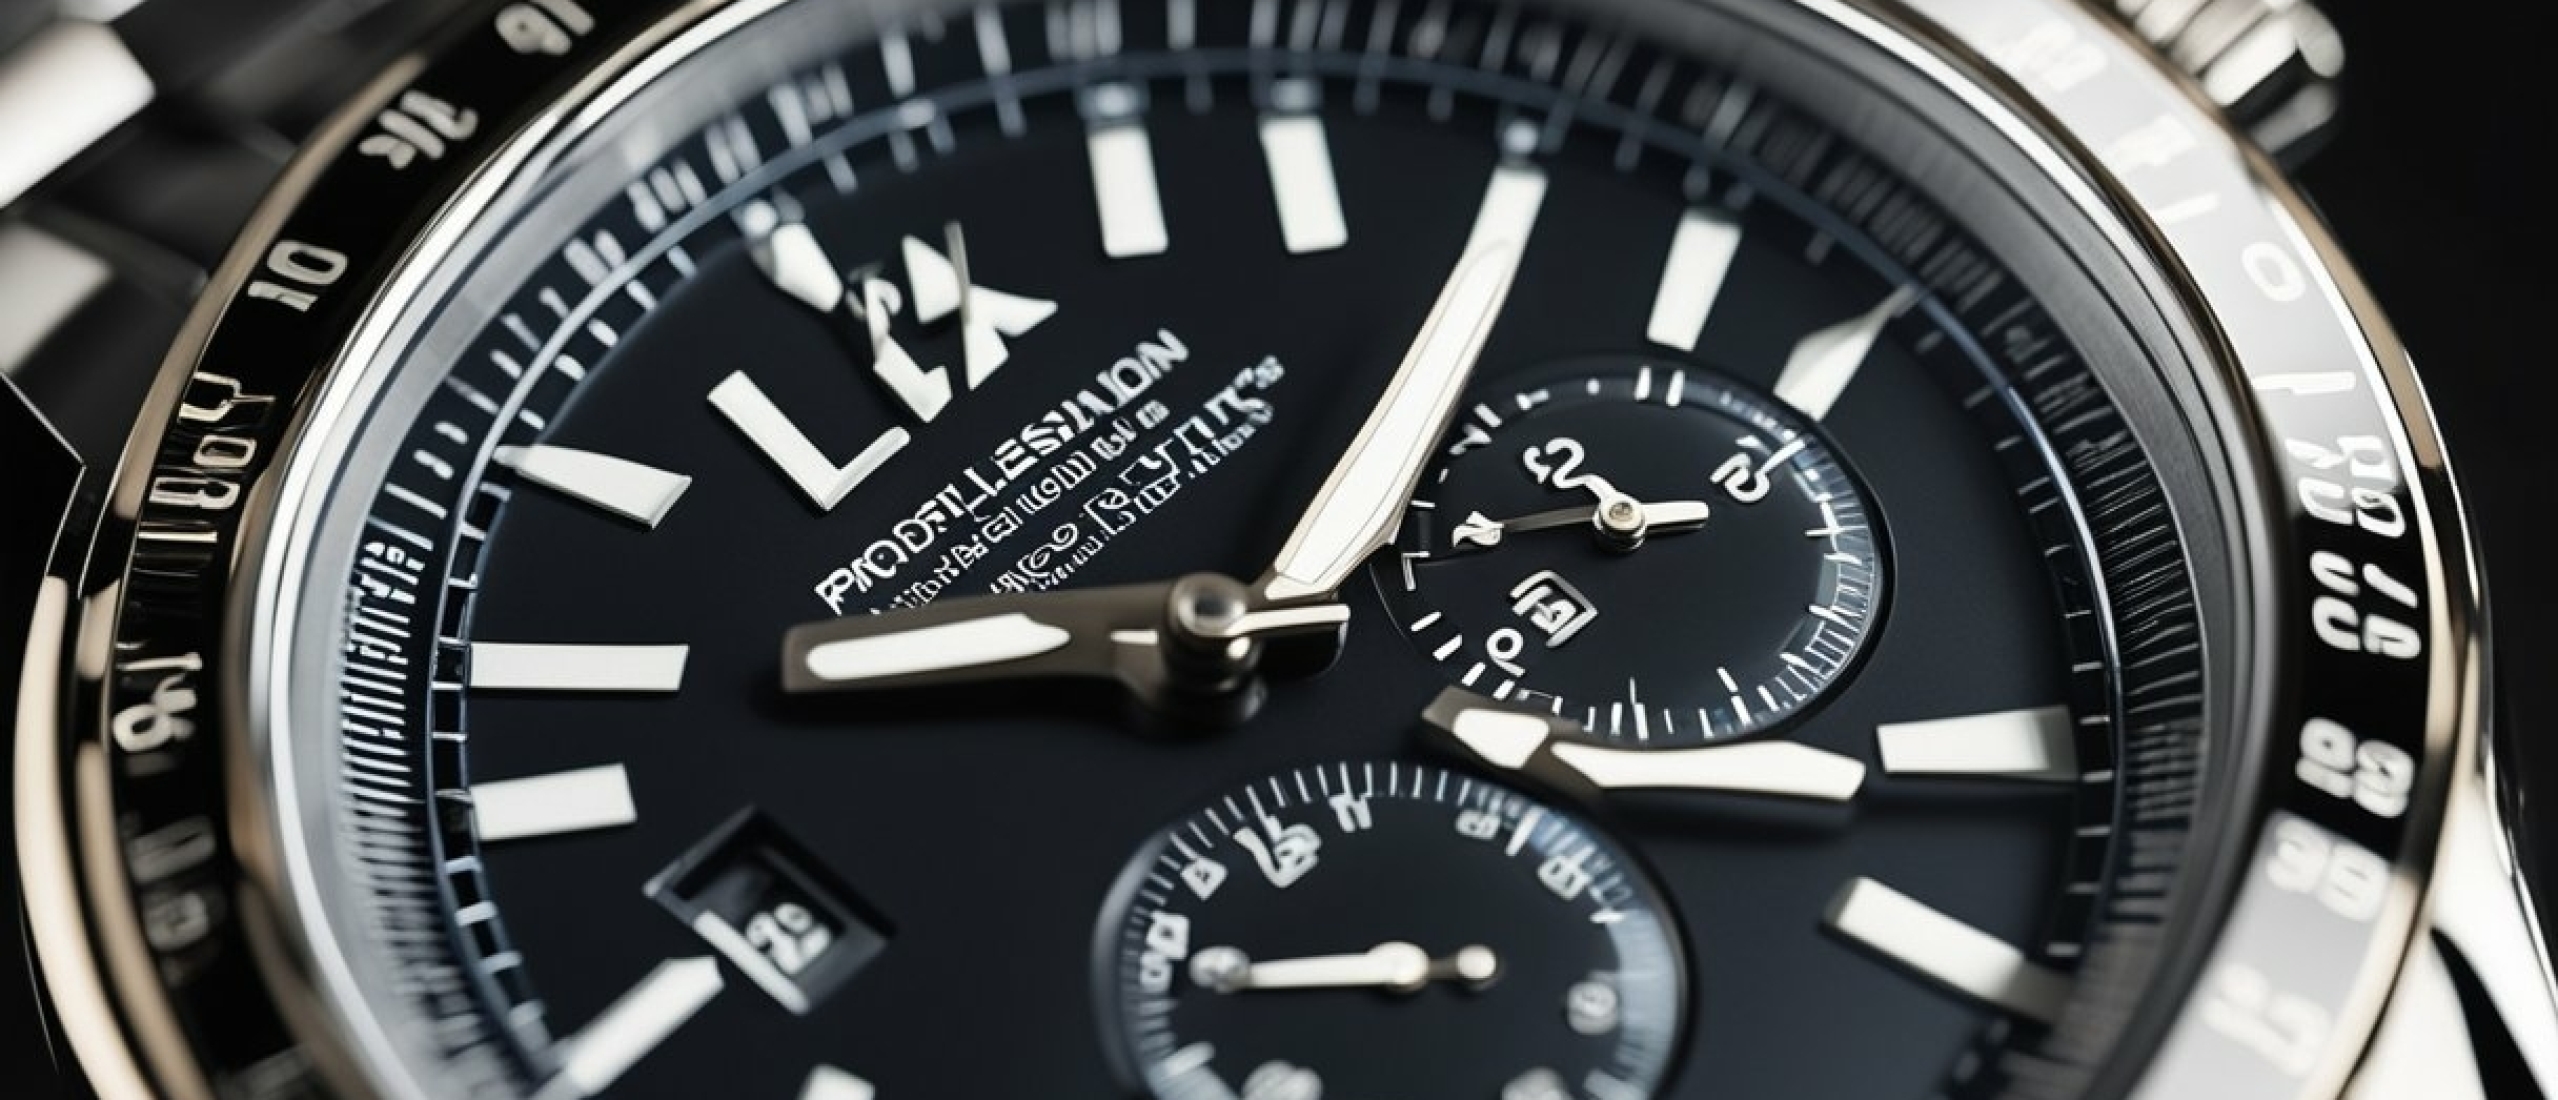 Wat is een tachymeter bij een horloge?